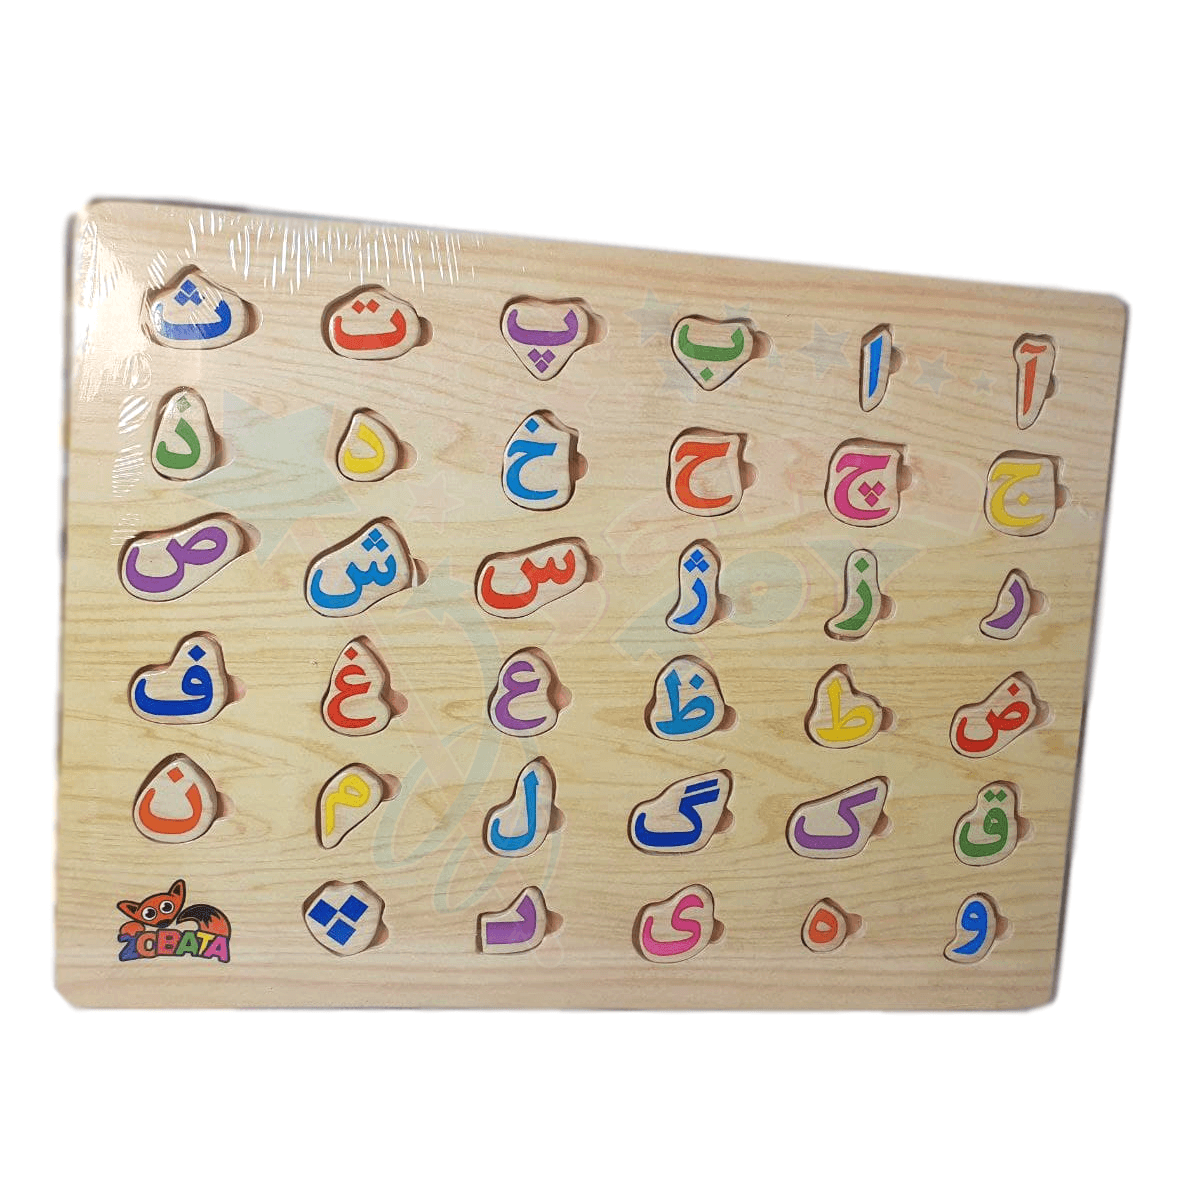 پازل چوبی حروف و اعداد کودک - اسباب بازی جاپاتوی